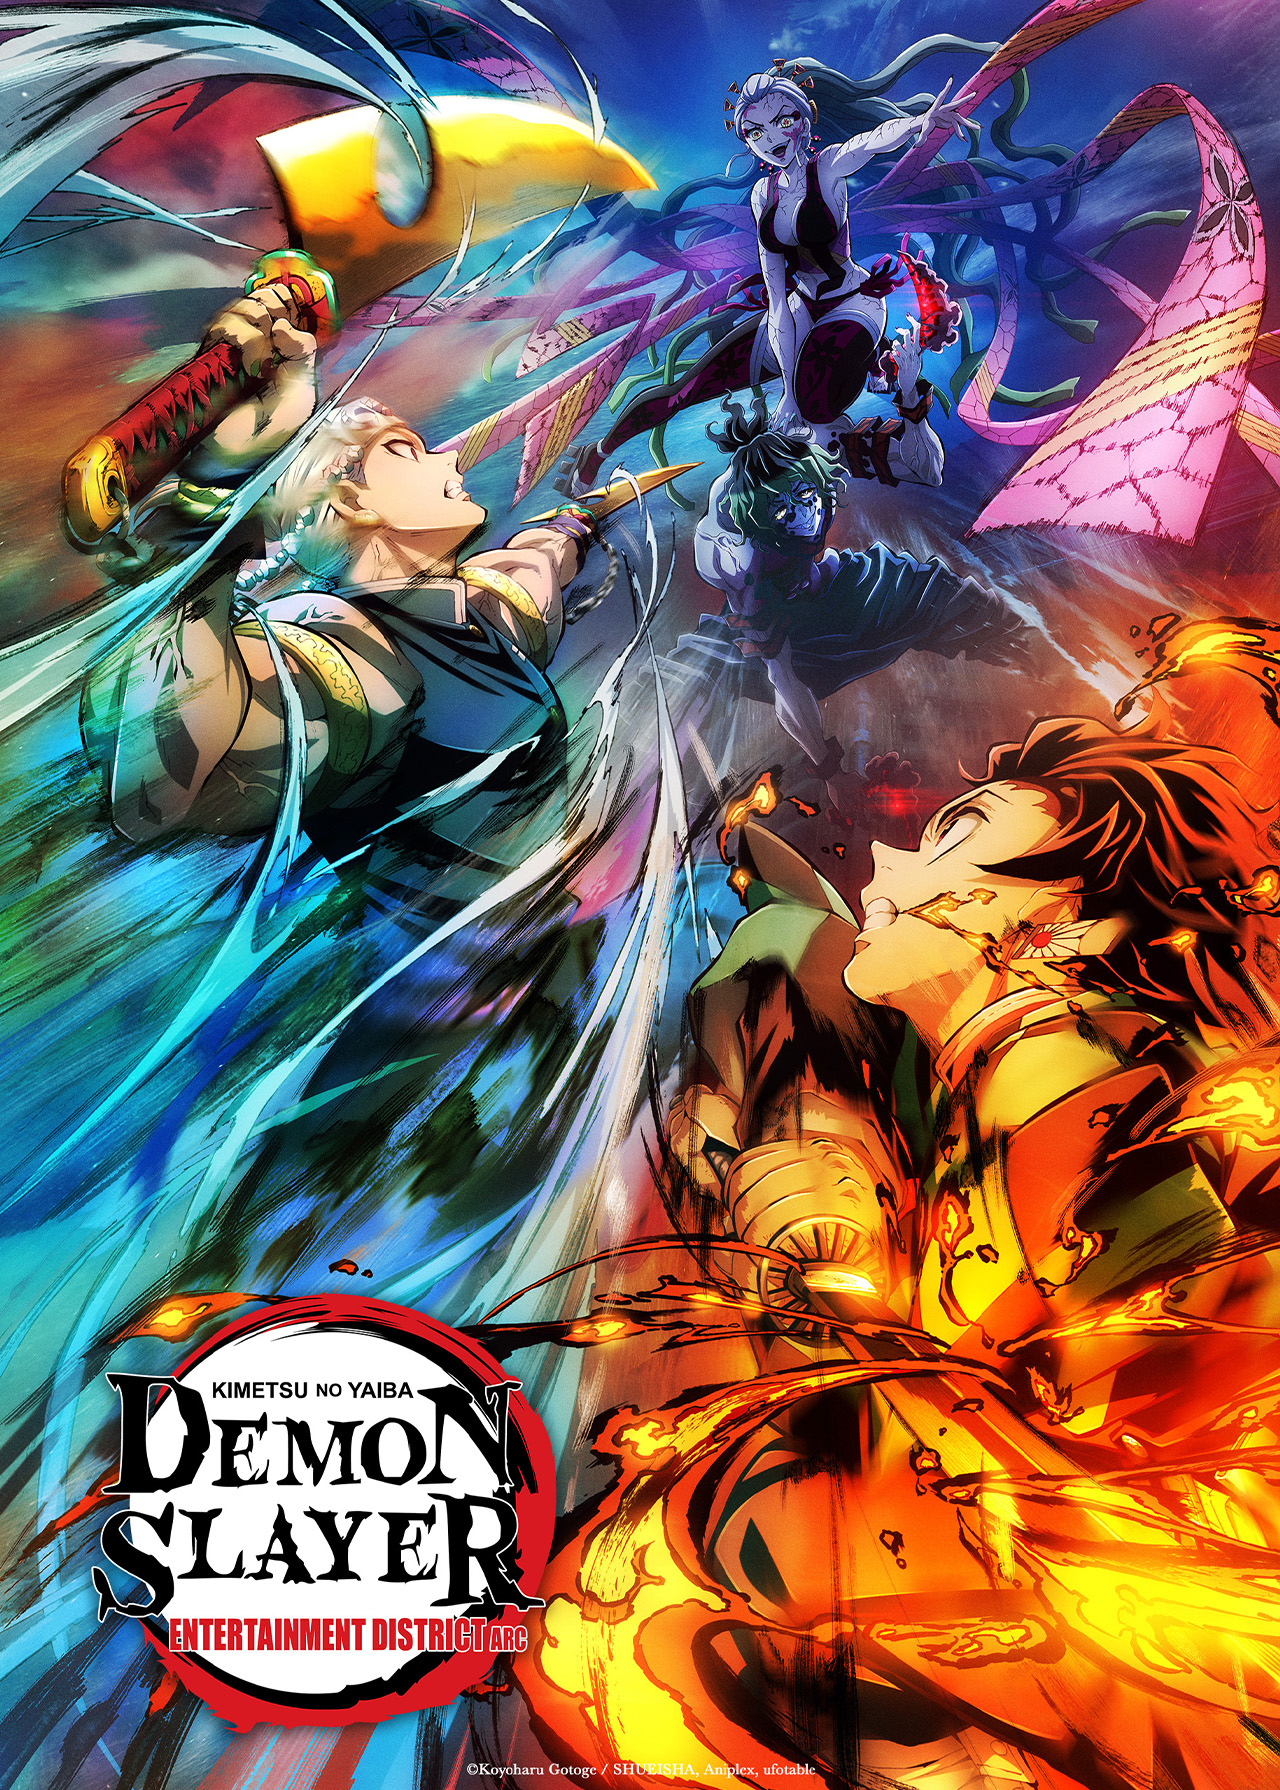 Kimetsu no yaiba season 2  Anime demon, Anime, Slayer